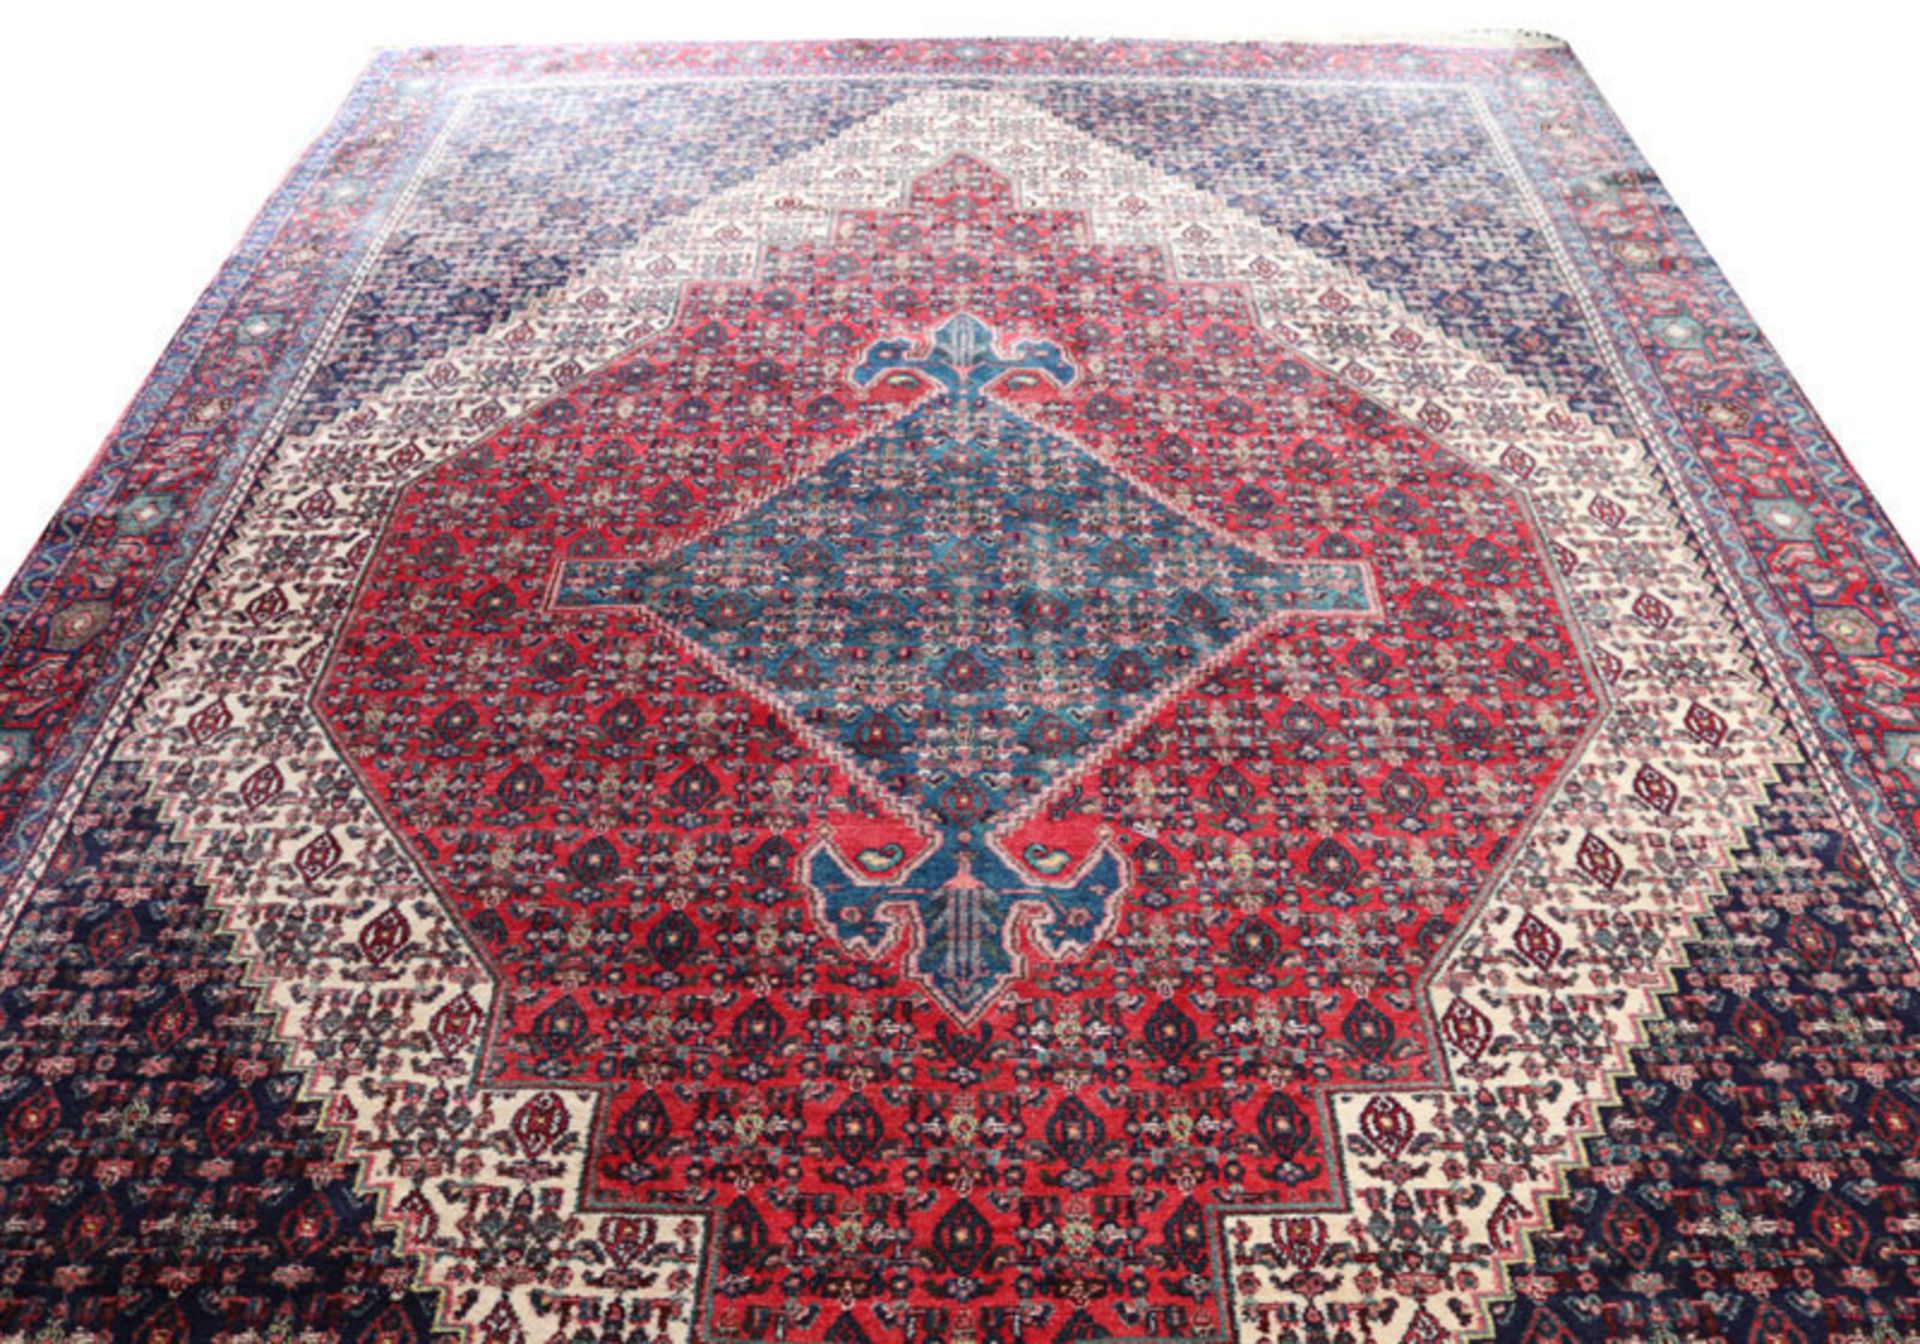 Teppich, Wiss, blau/rot/beige, 385 cm x 265 cm, Gebrauchsspuren